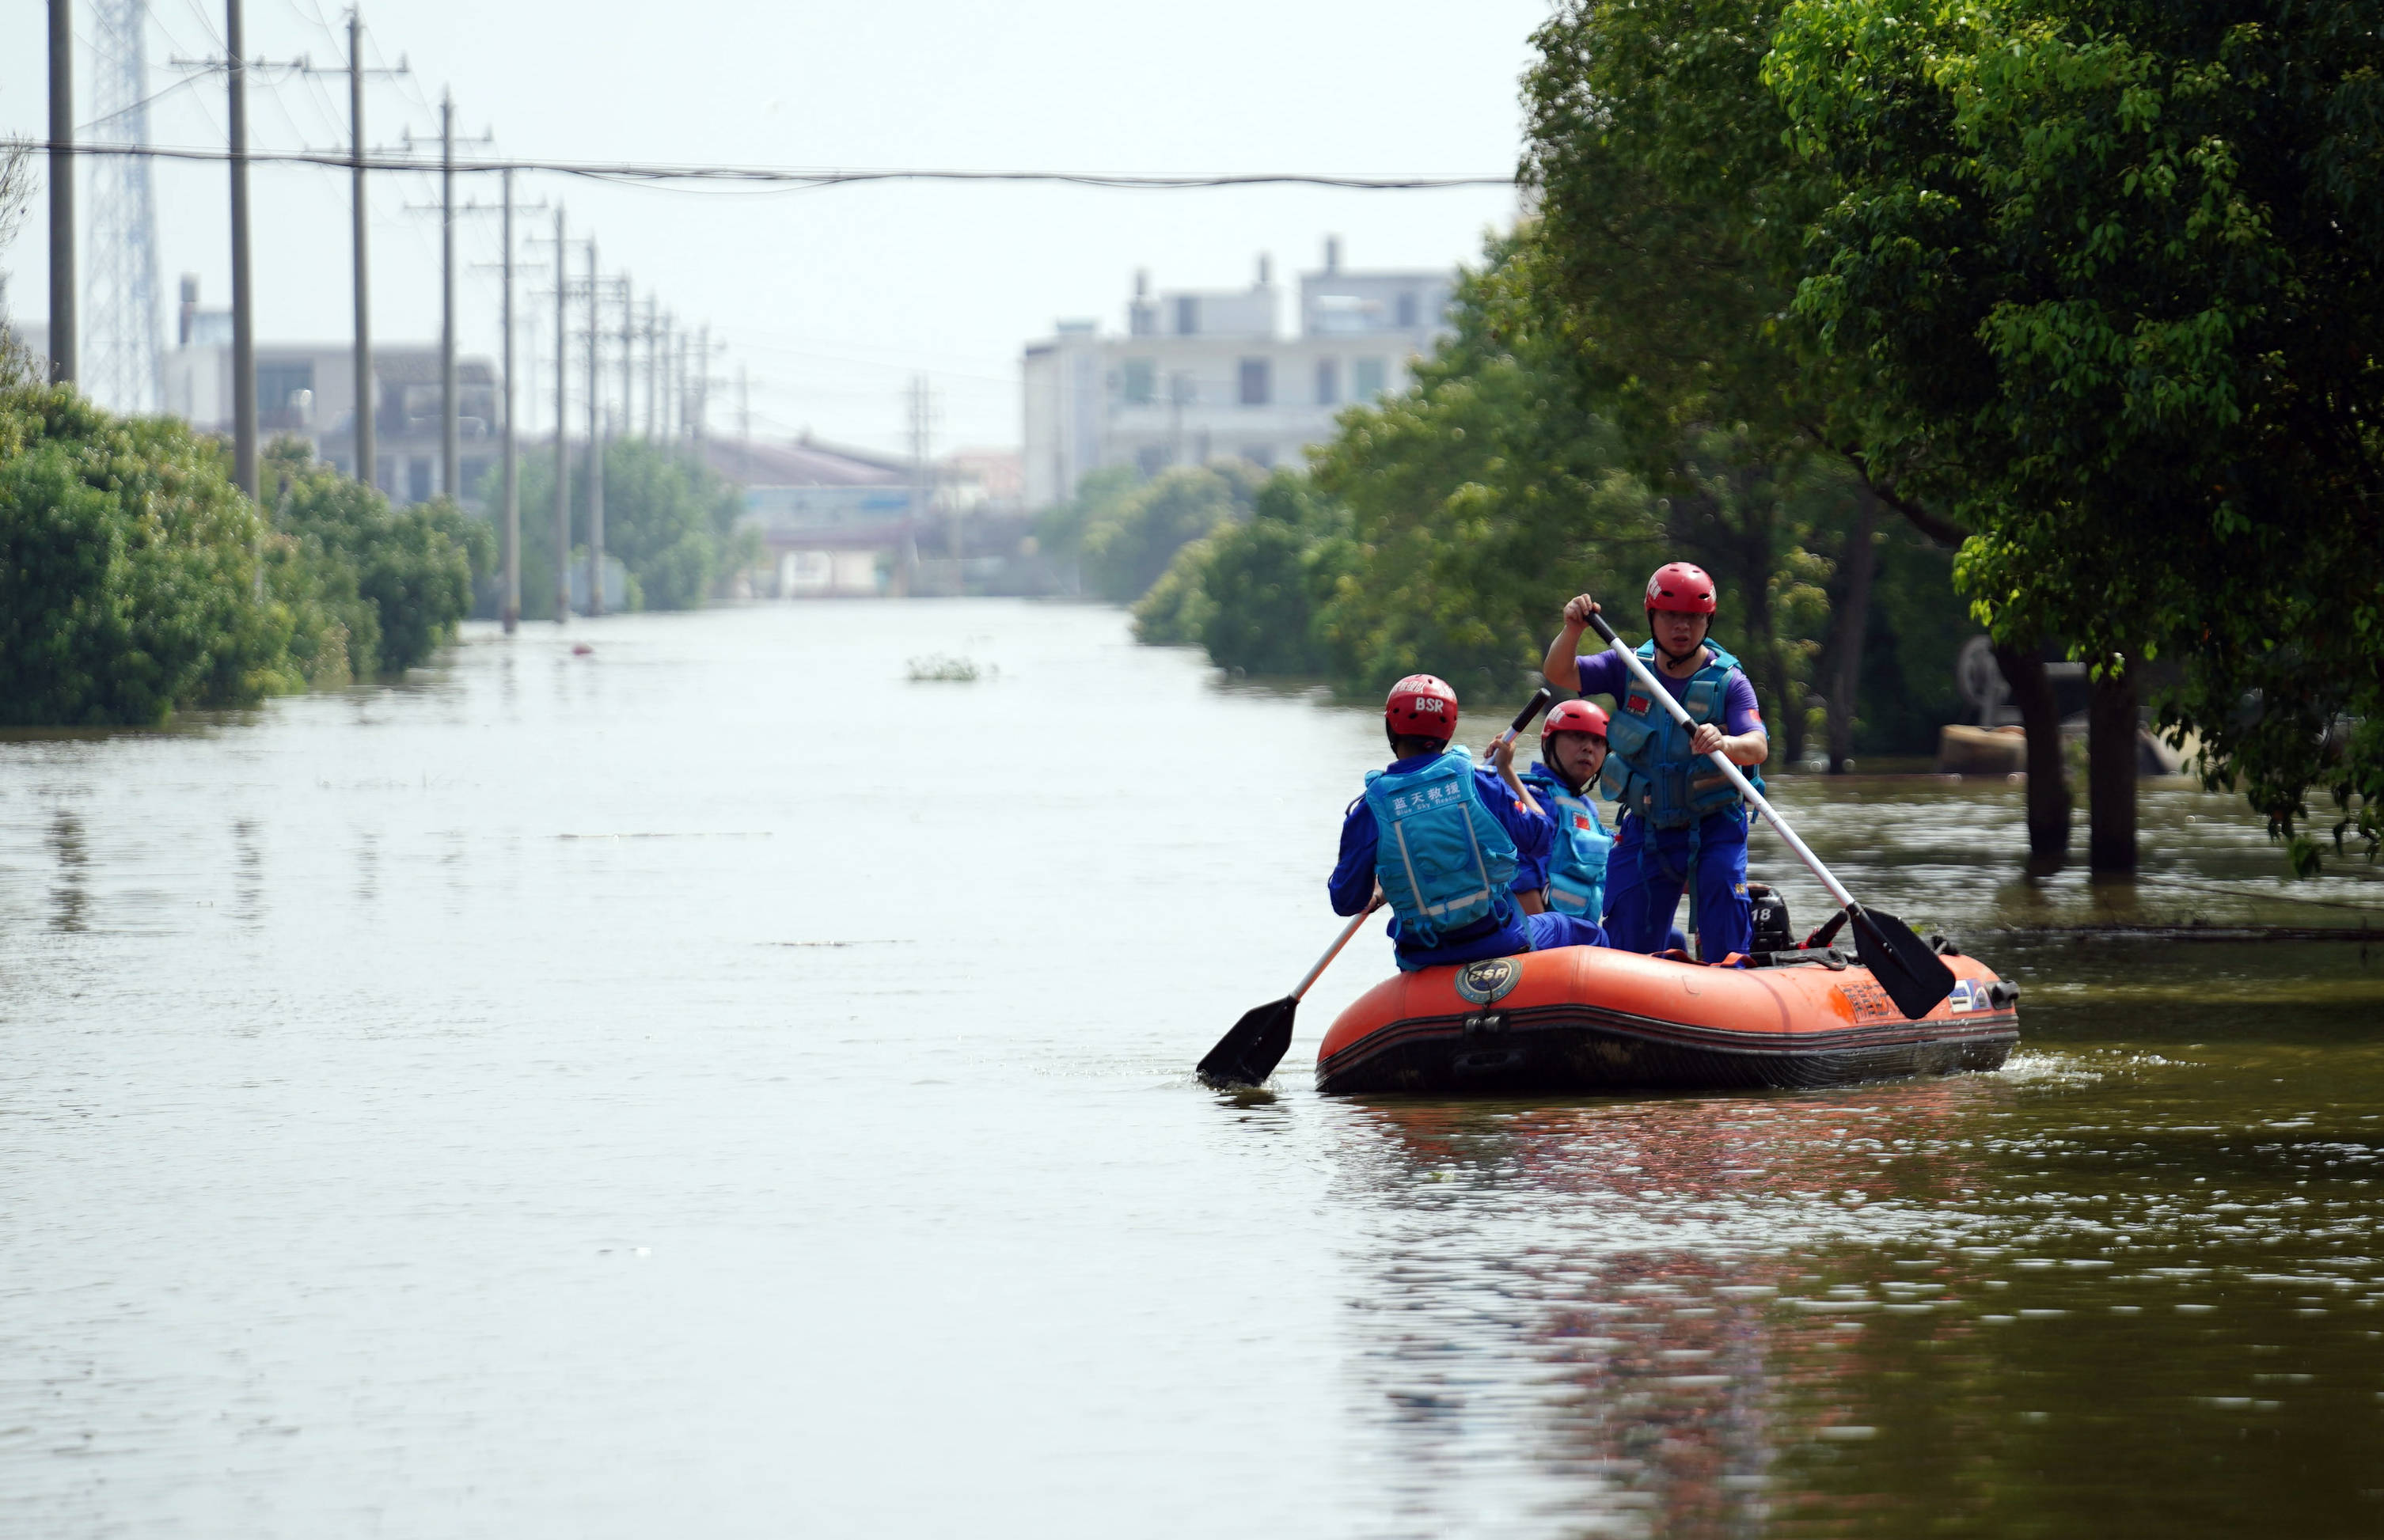 7月13日,在永修县三角乡,救援人员乘坐橡皮艇前往救援